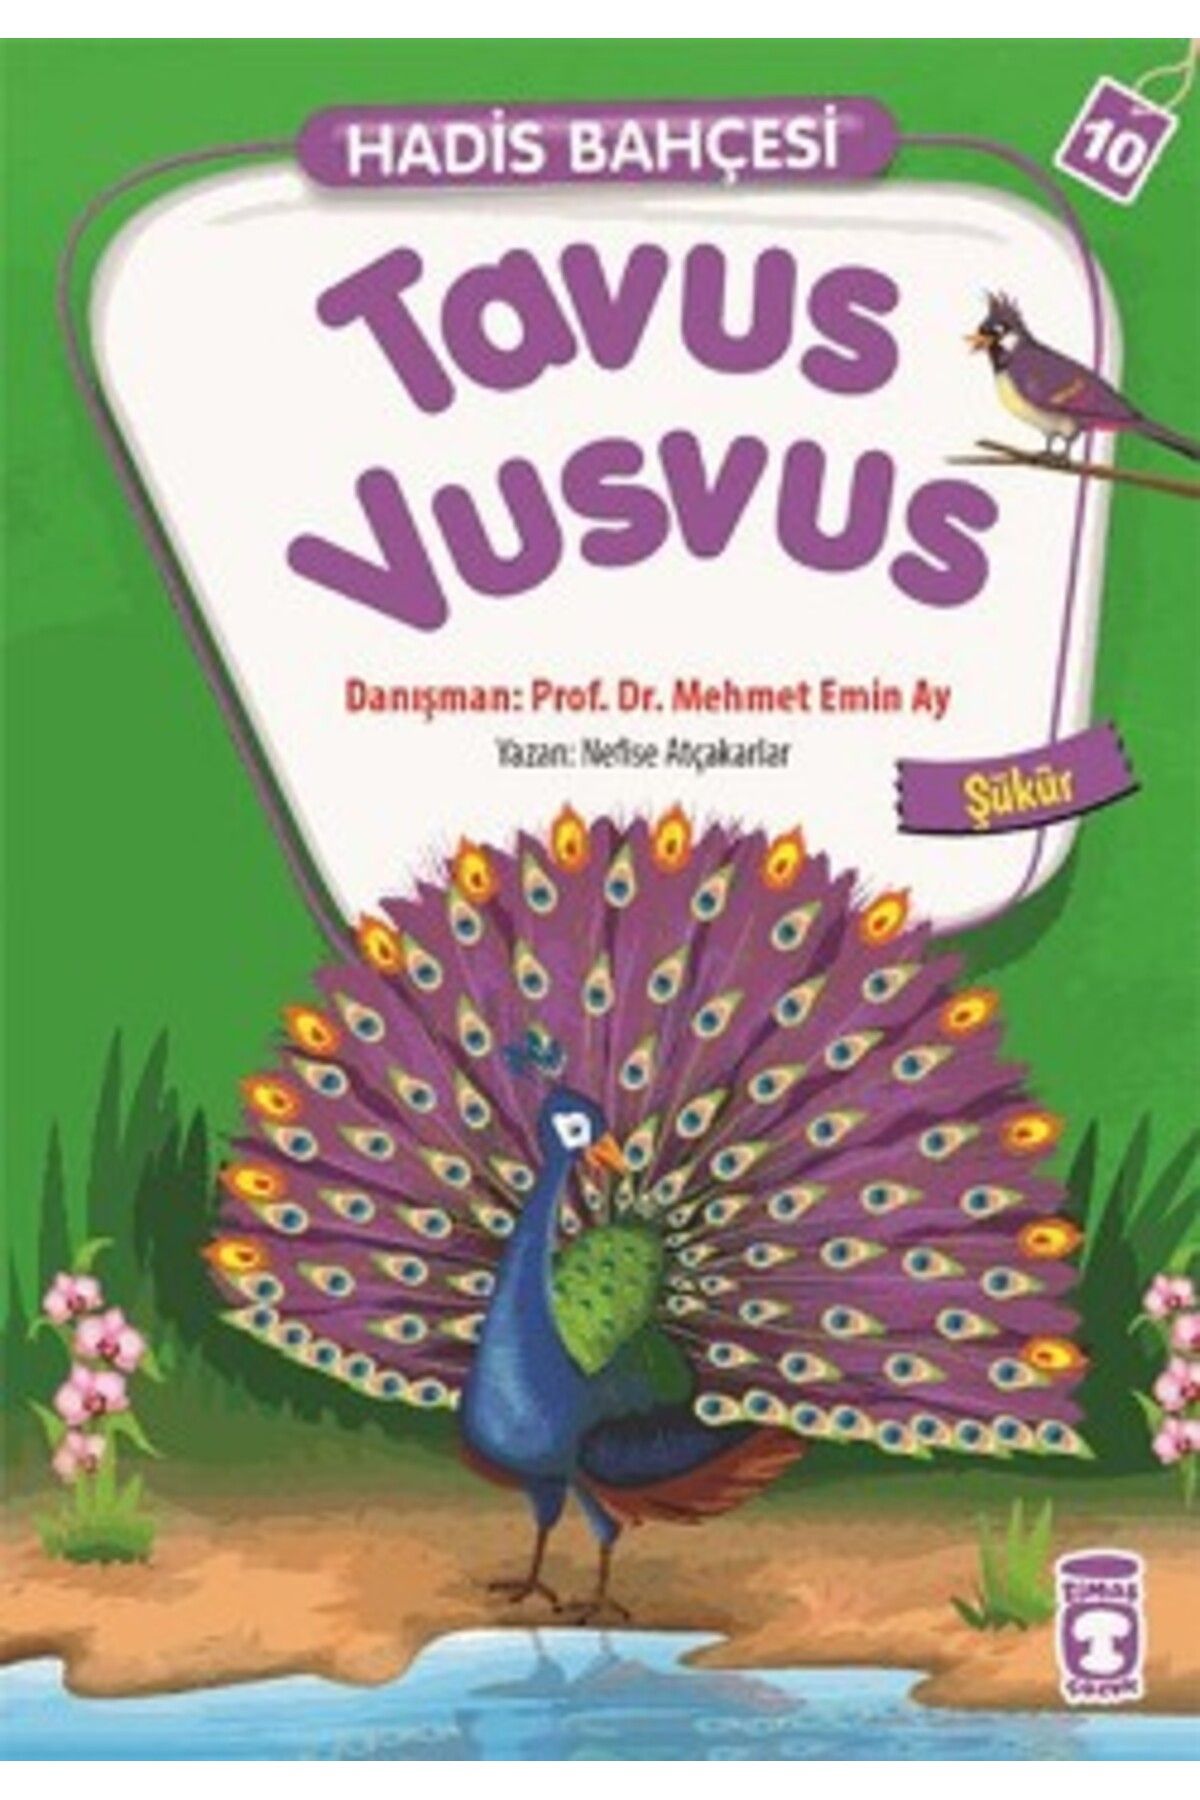 Timaş Çocuk Tavus Vusvus - Hadis Bahçesi 10